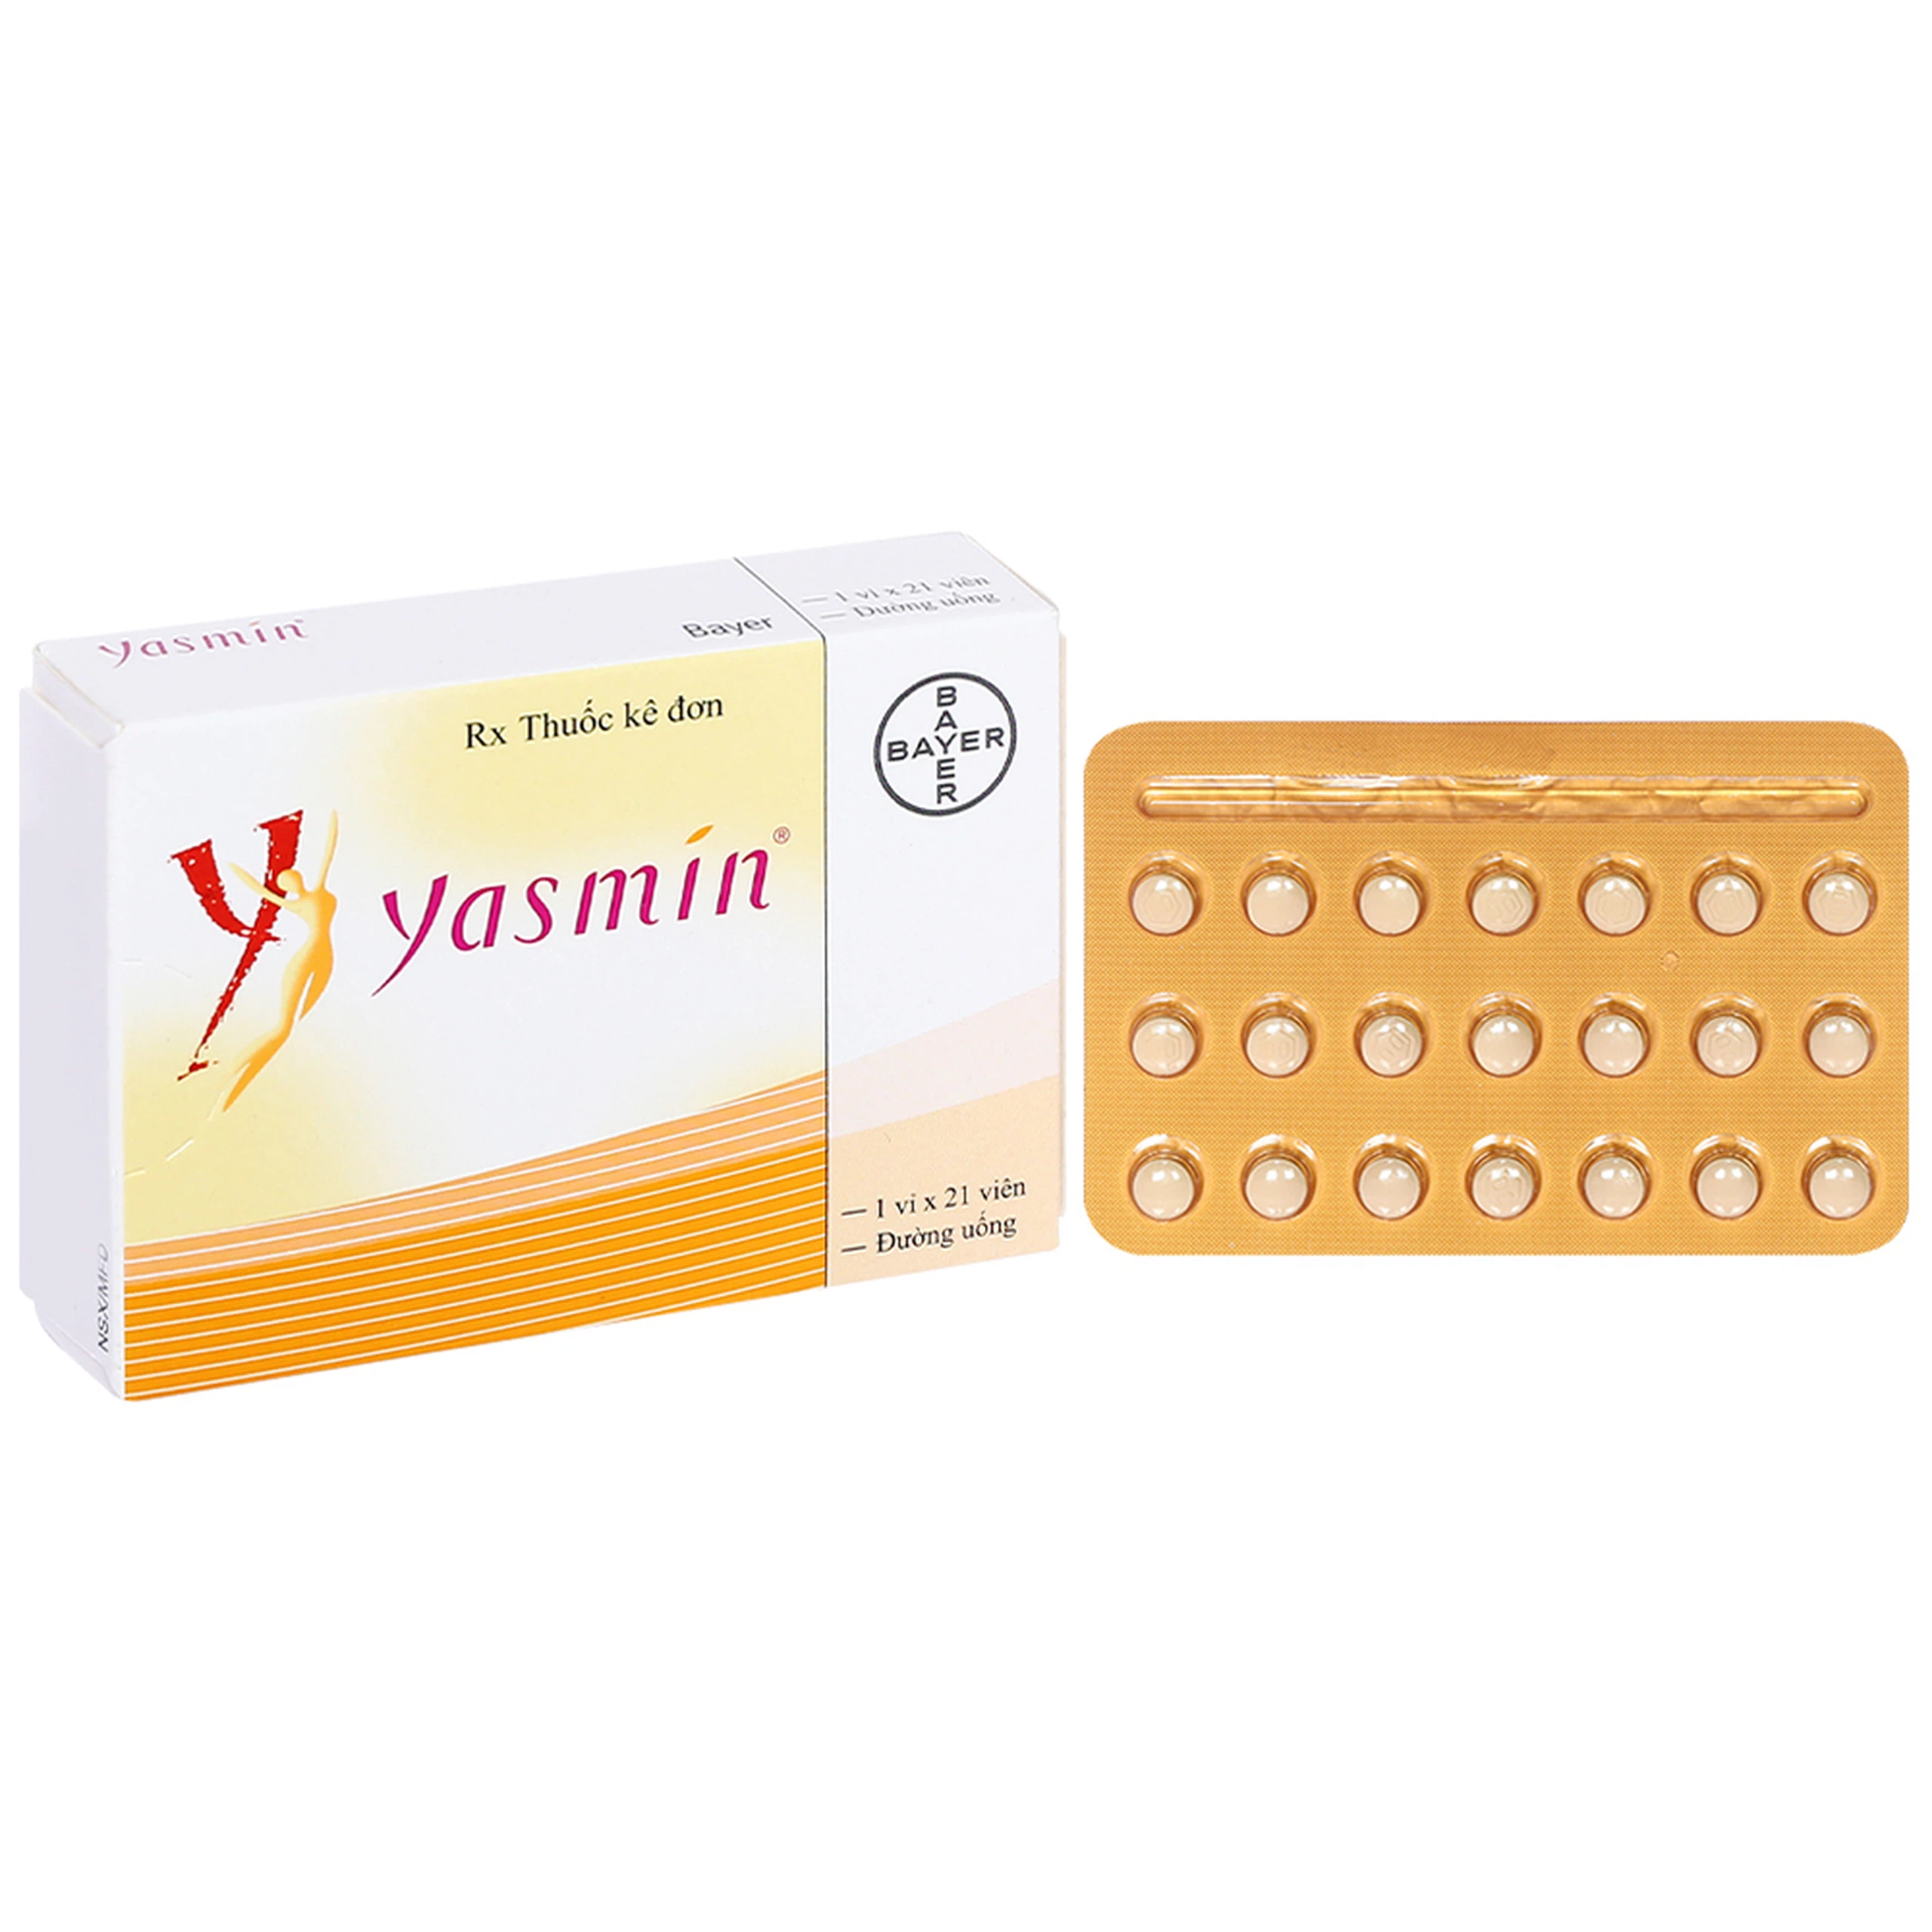 Thuốc Yasmin Bayer dùng tránh thai (1 vỉ x 21 viên)